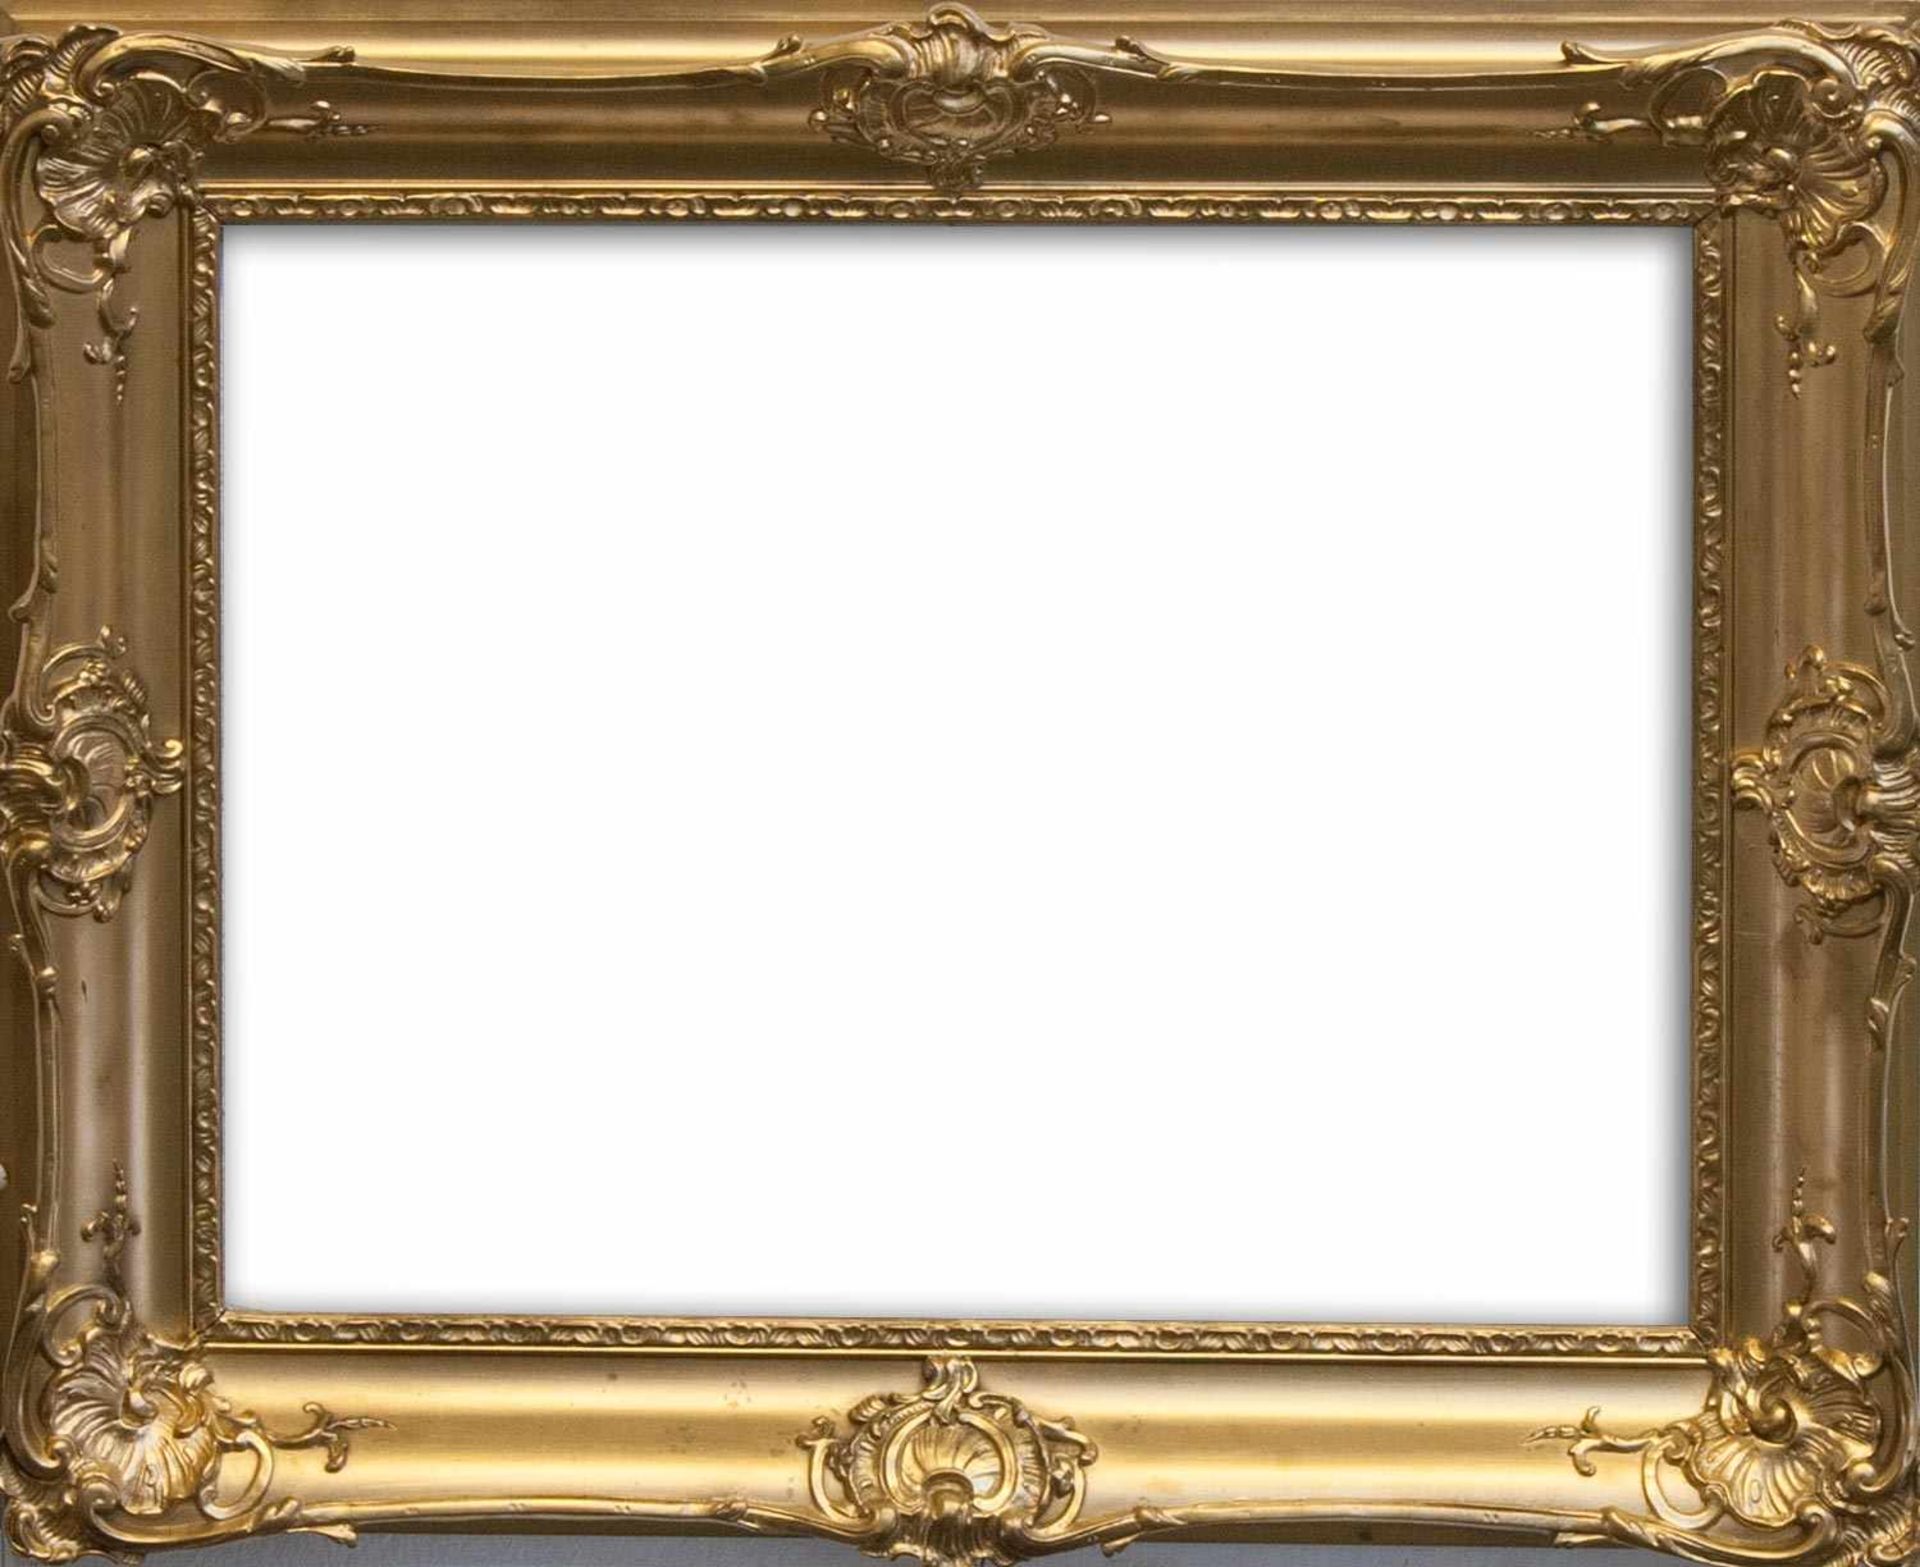 Bilder-/ Spiegelrahmen um 1920er Jahre, Holz/ Stuck, goldfarben gefaßt, Innenmaß: 54 x 70 cm Ein